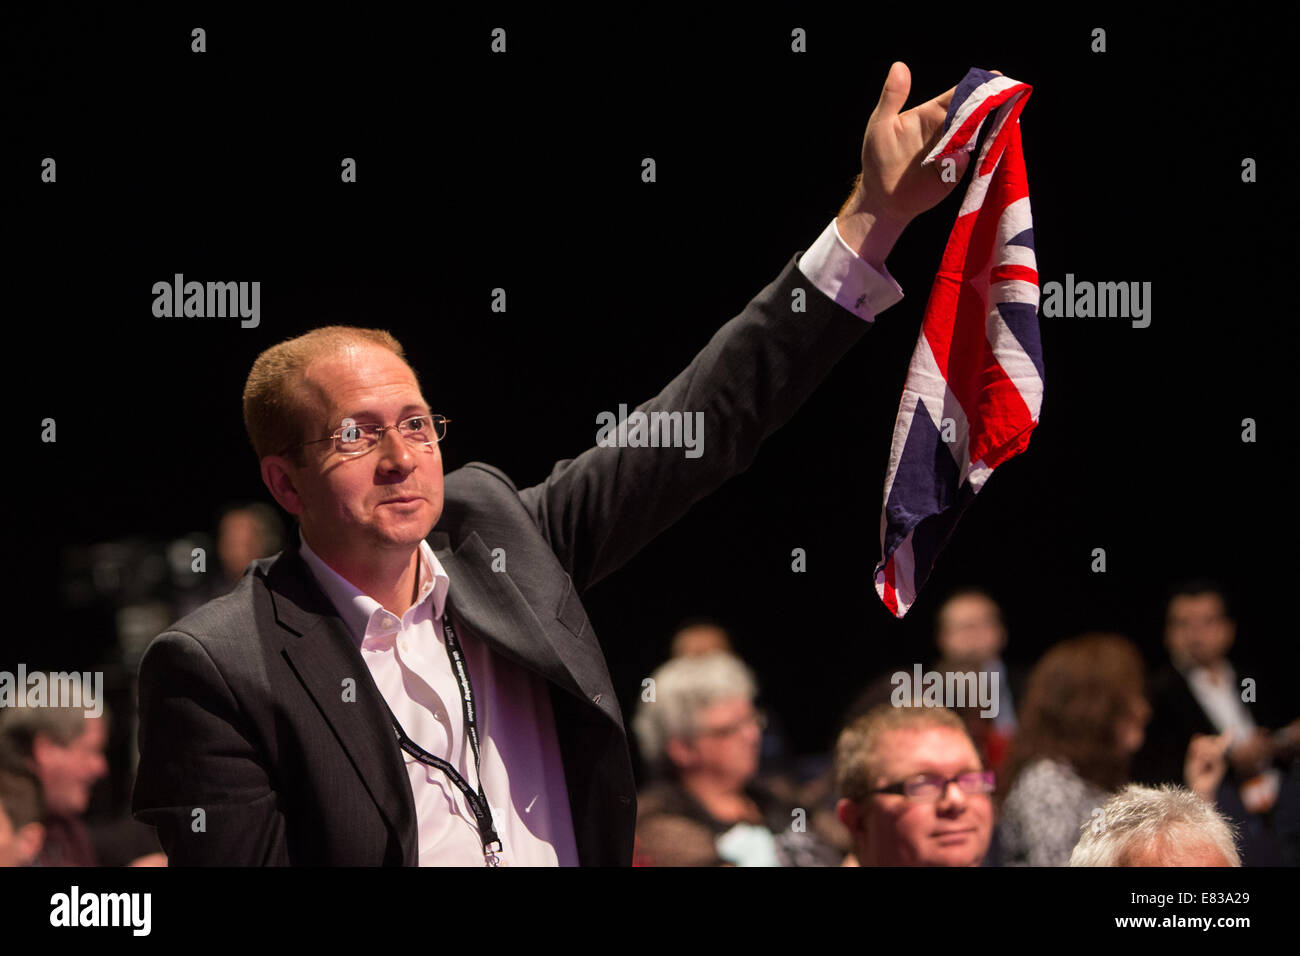 Patriotische Delegat, hält ein Union Jack versucht, eine Frage auf der Arbeitspartei Konferenz Konferenz Stockfoto